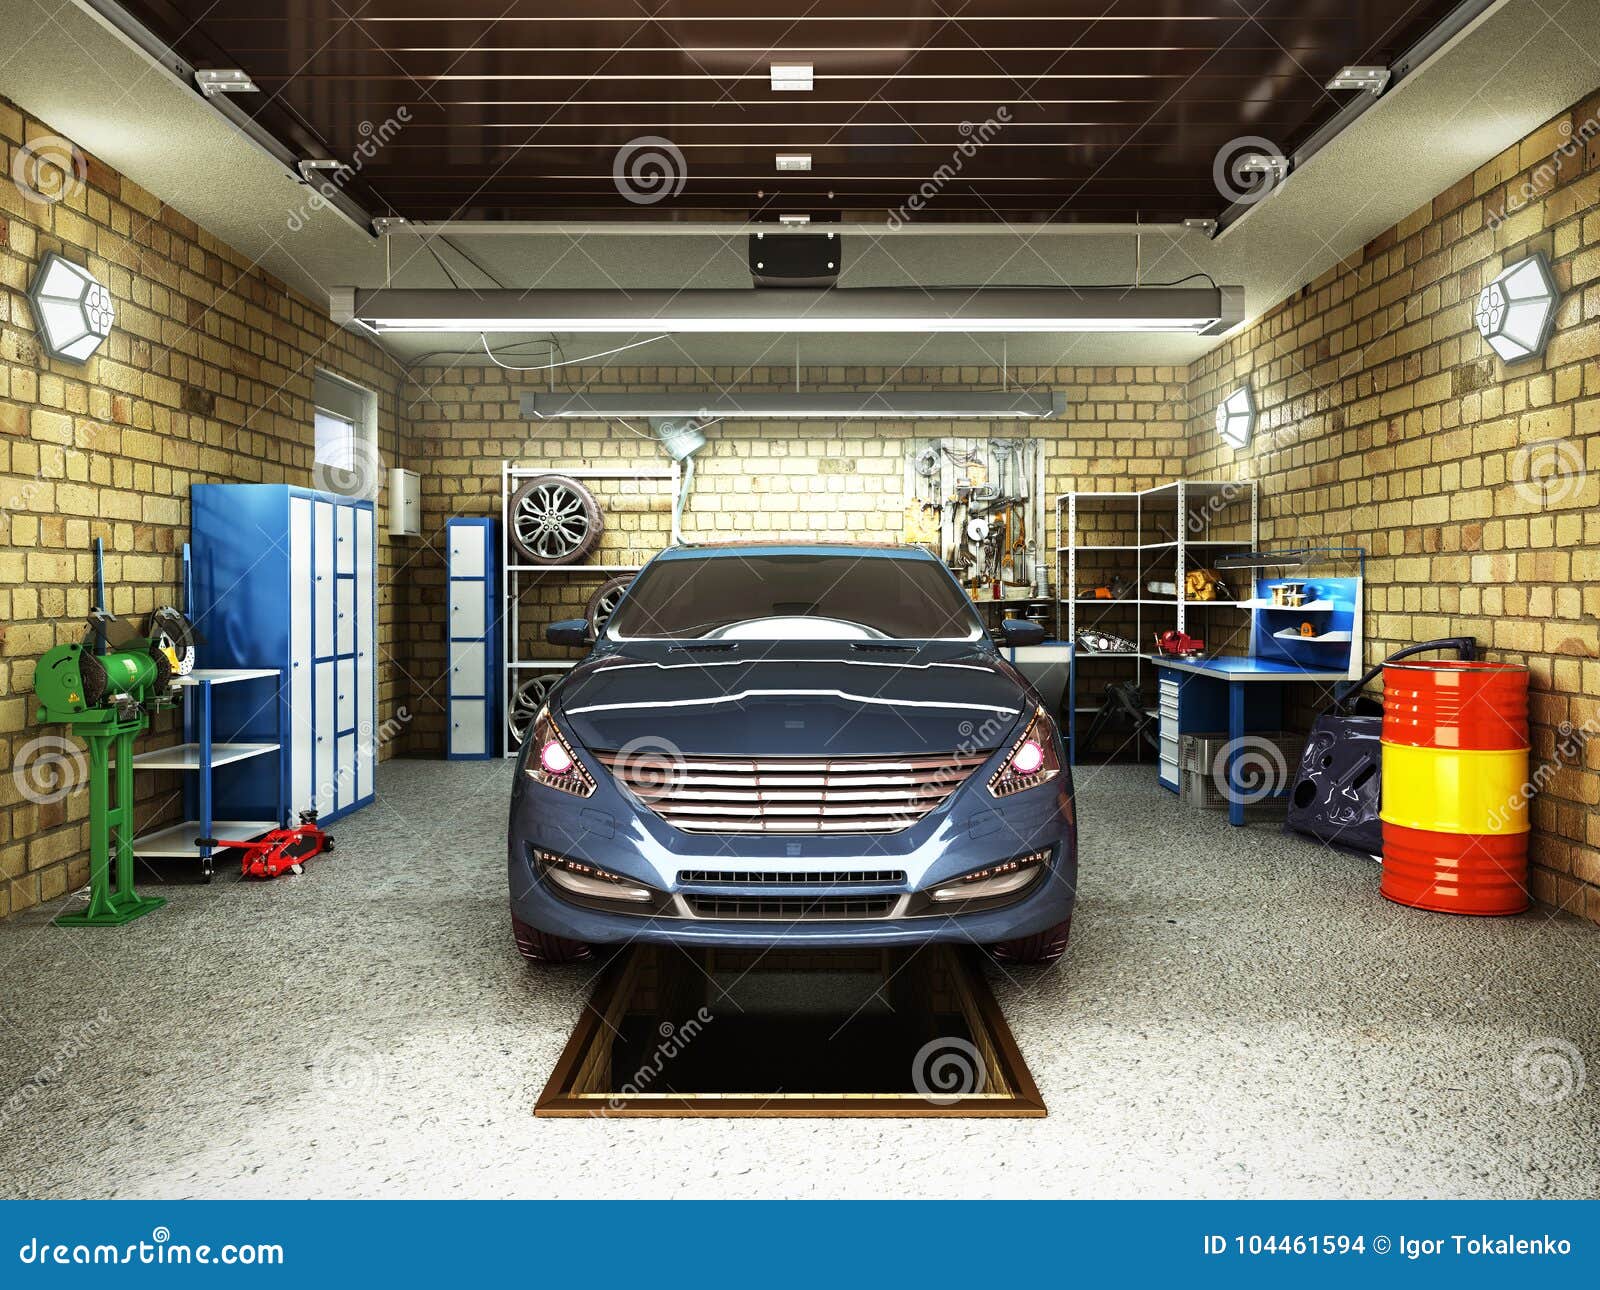 Car Garage 3d Model Free Download